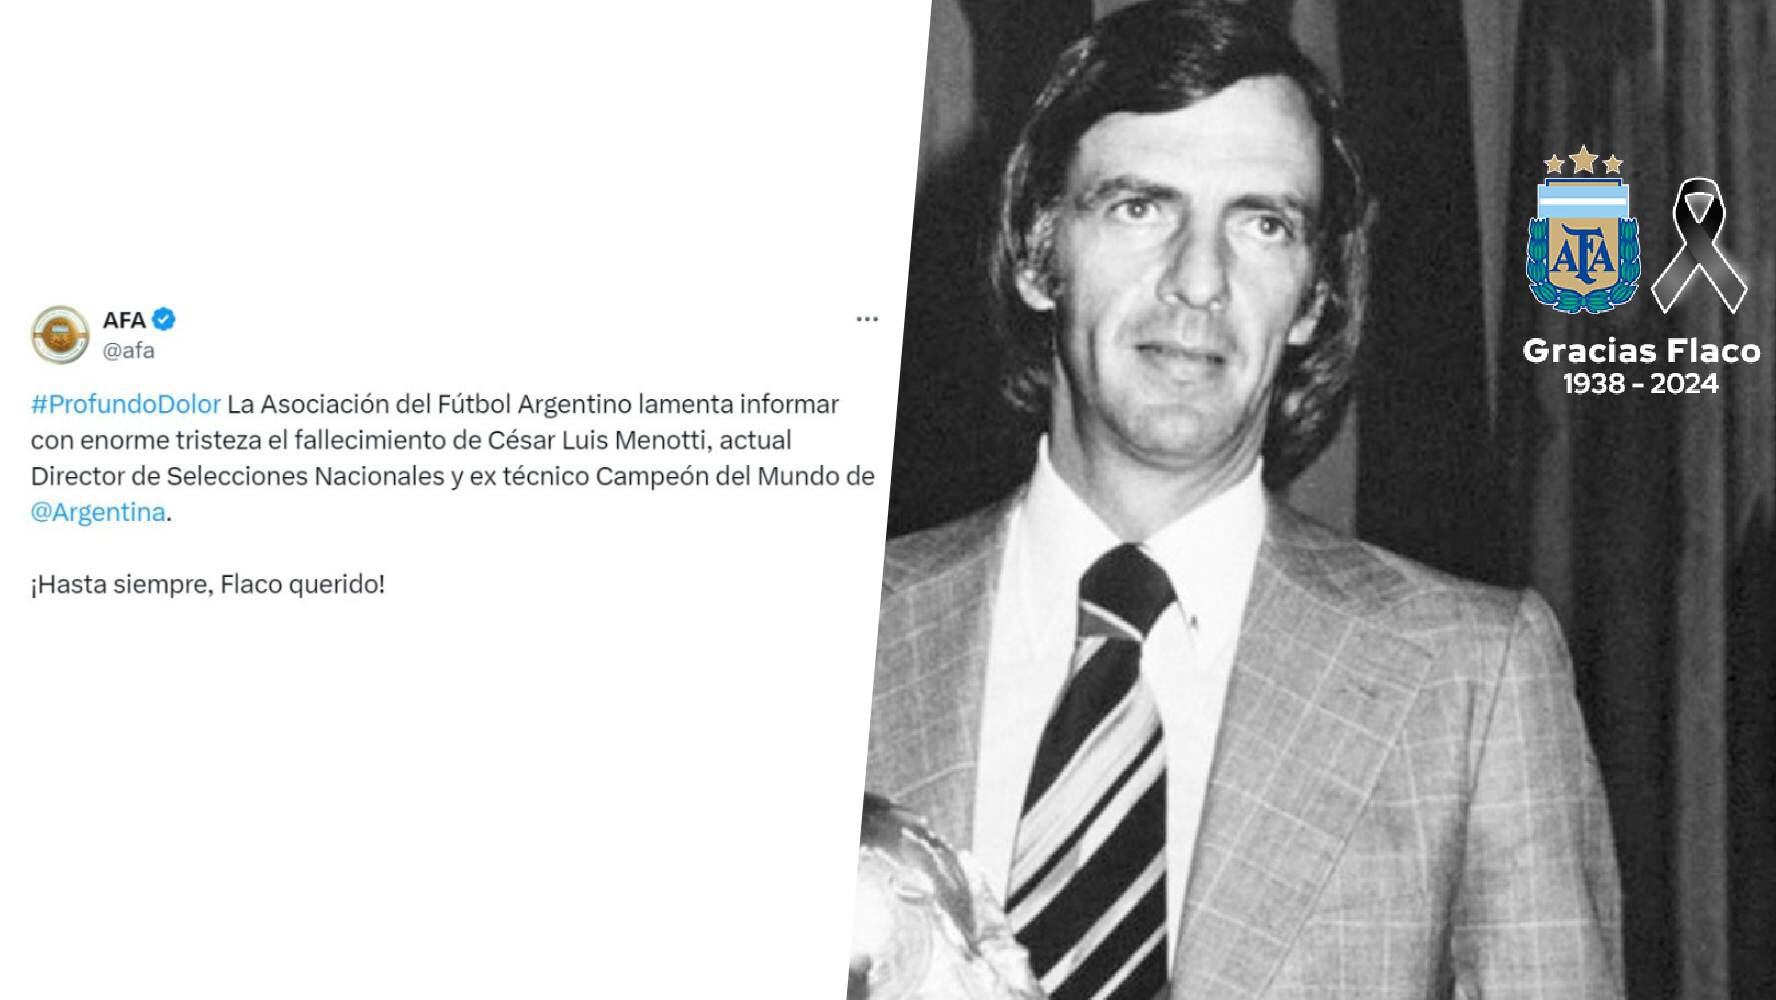 Mensaje de la Asociación de Futbol Argentino sobre la muerte de César Luis Menotti. (Foto: X / @afa)